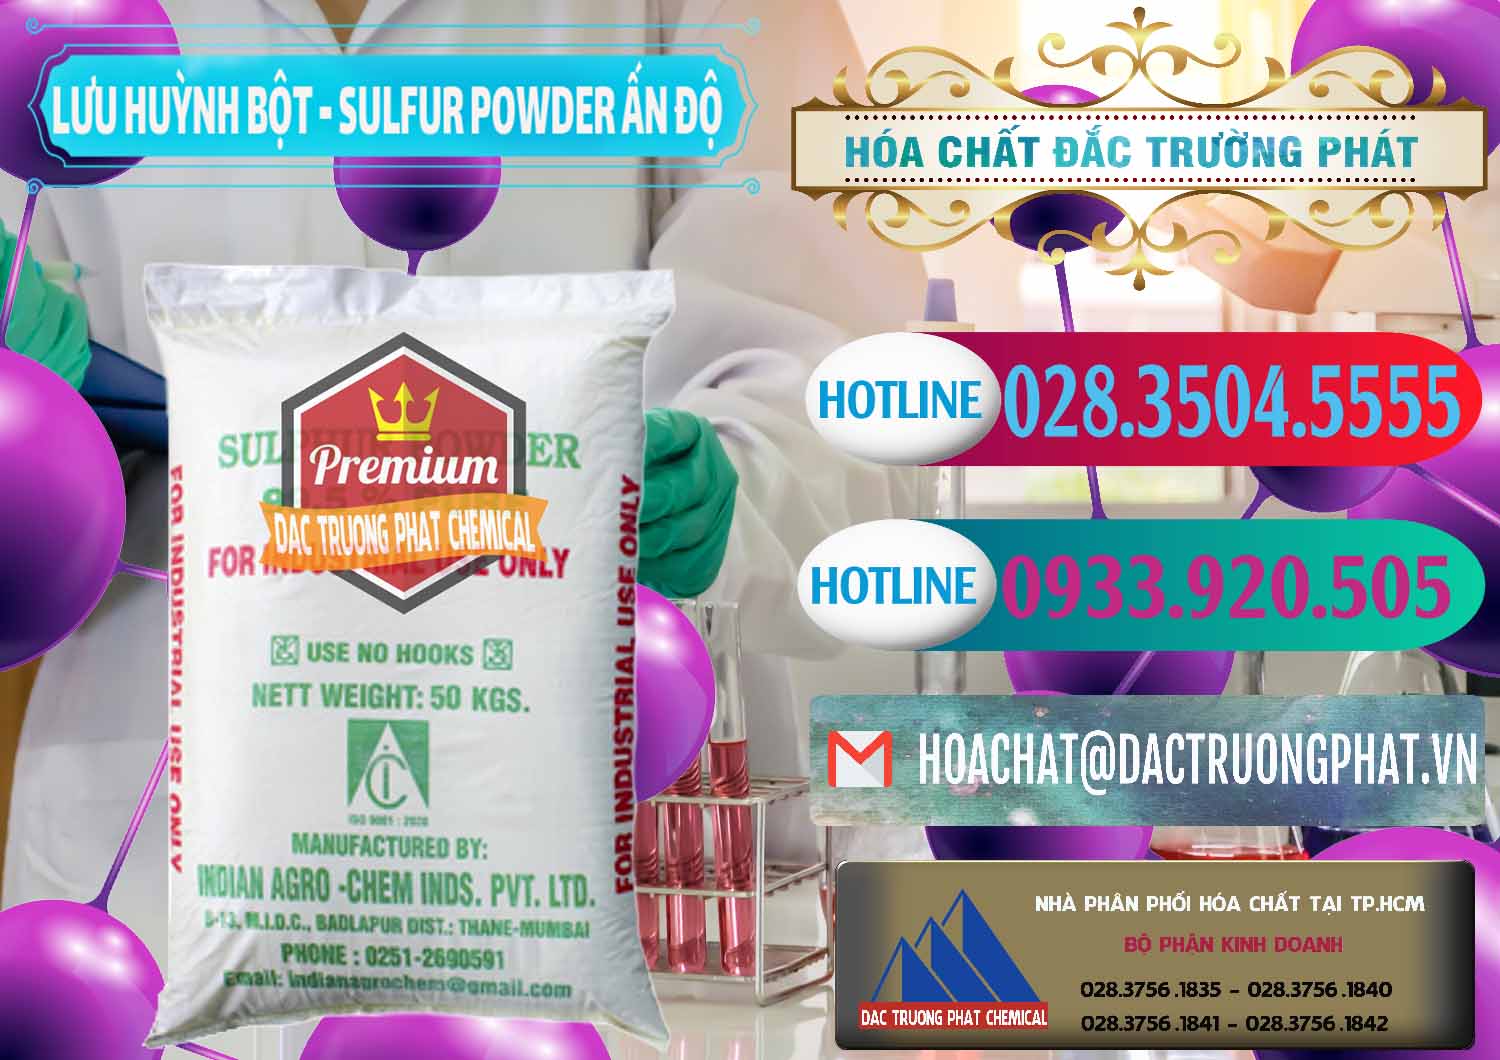 Nơi chuyên cung ứng ( bán ) Lưu huỳnh Bột - Sulfur Powder Ấn Độ India - 0347 - Công ty cung cấp - phân phối hóa chất tại TP.HCM - truongphat.vn